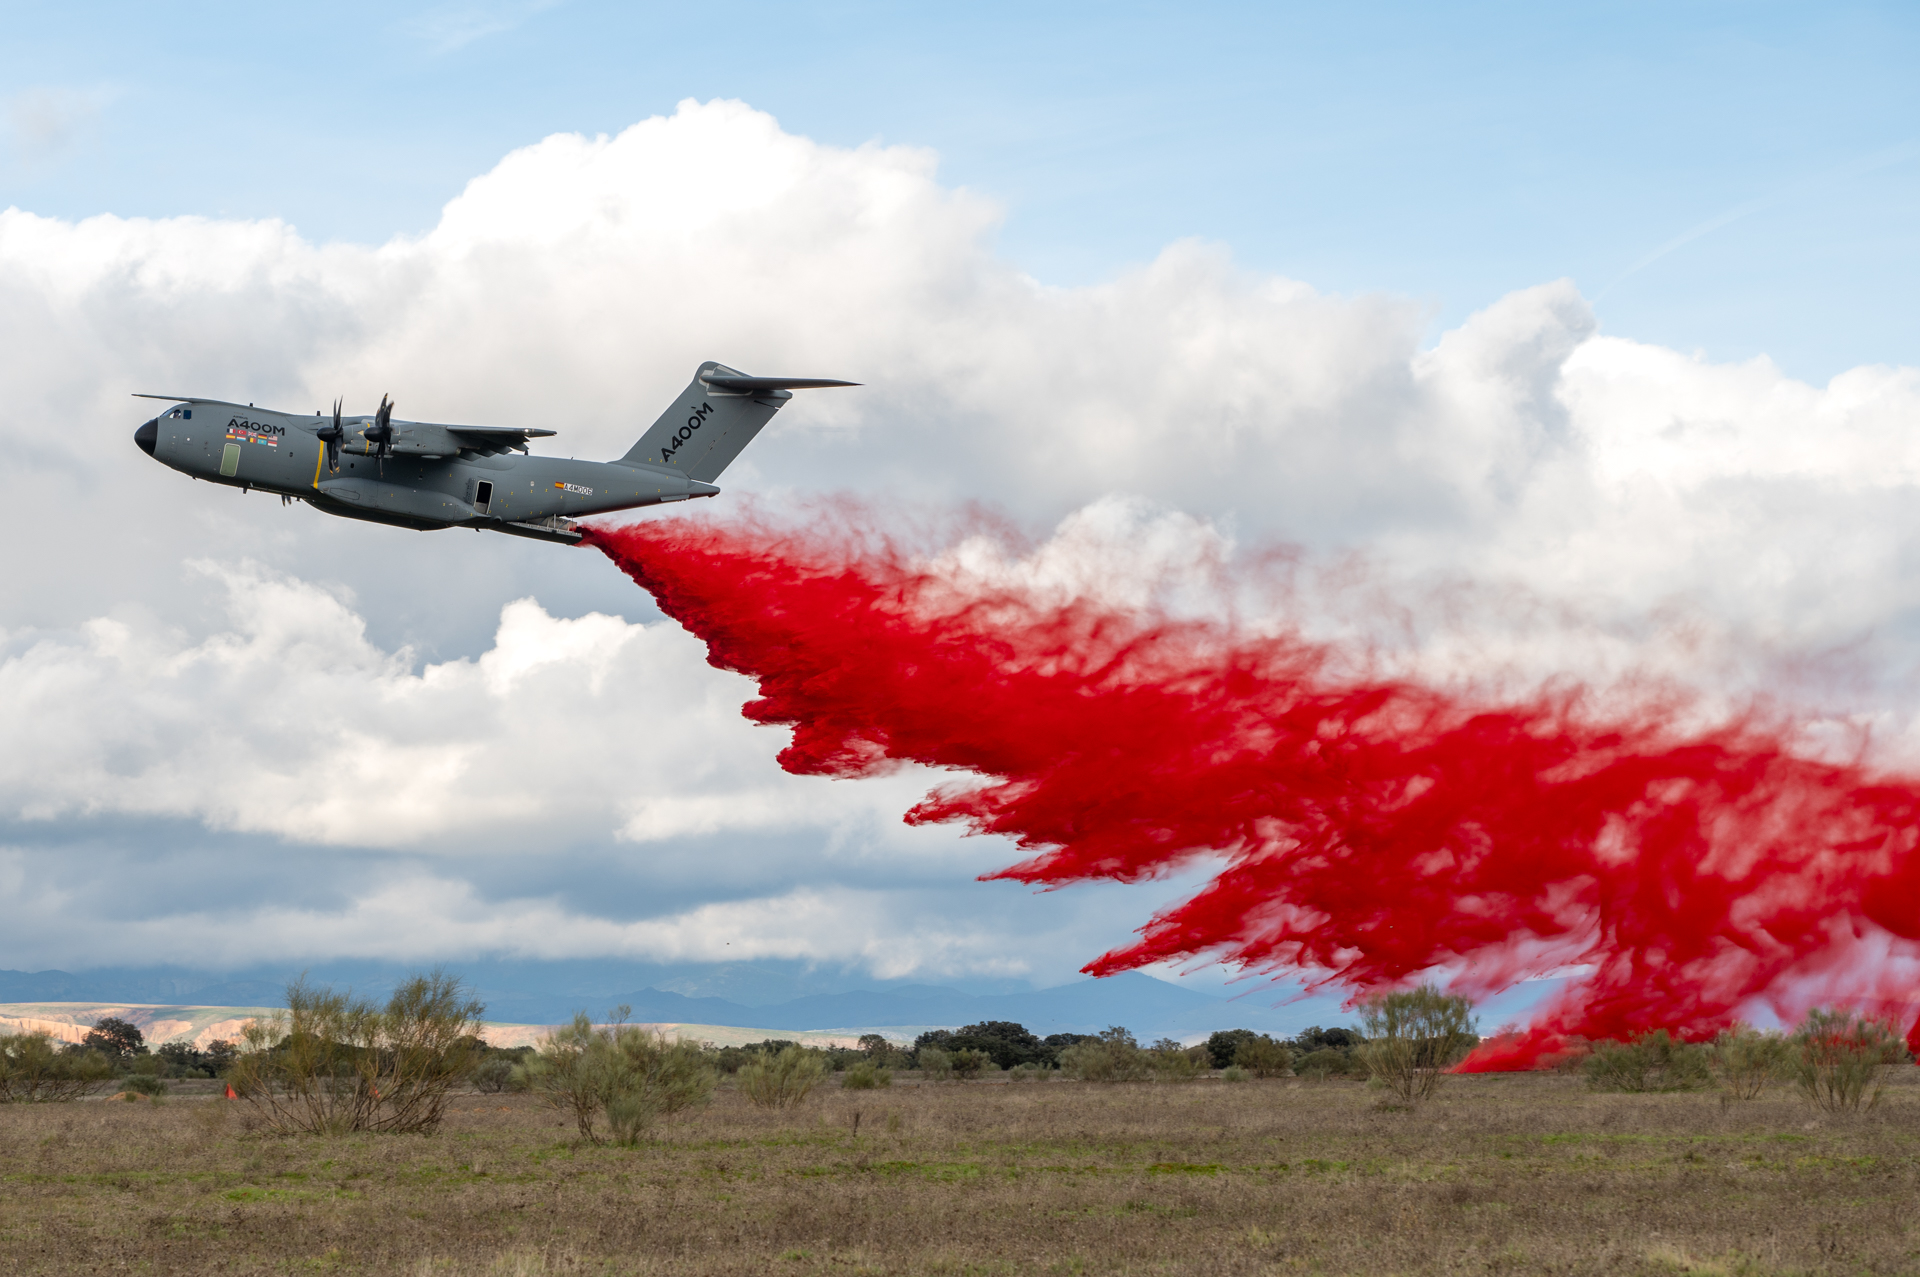 Neuer Prototyp-Bausatz für den A400M für Feuerbekämpfung von Airbus getestet.